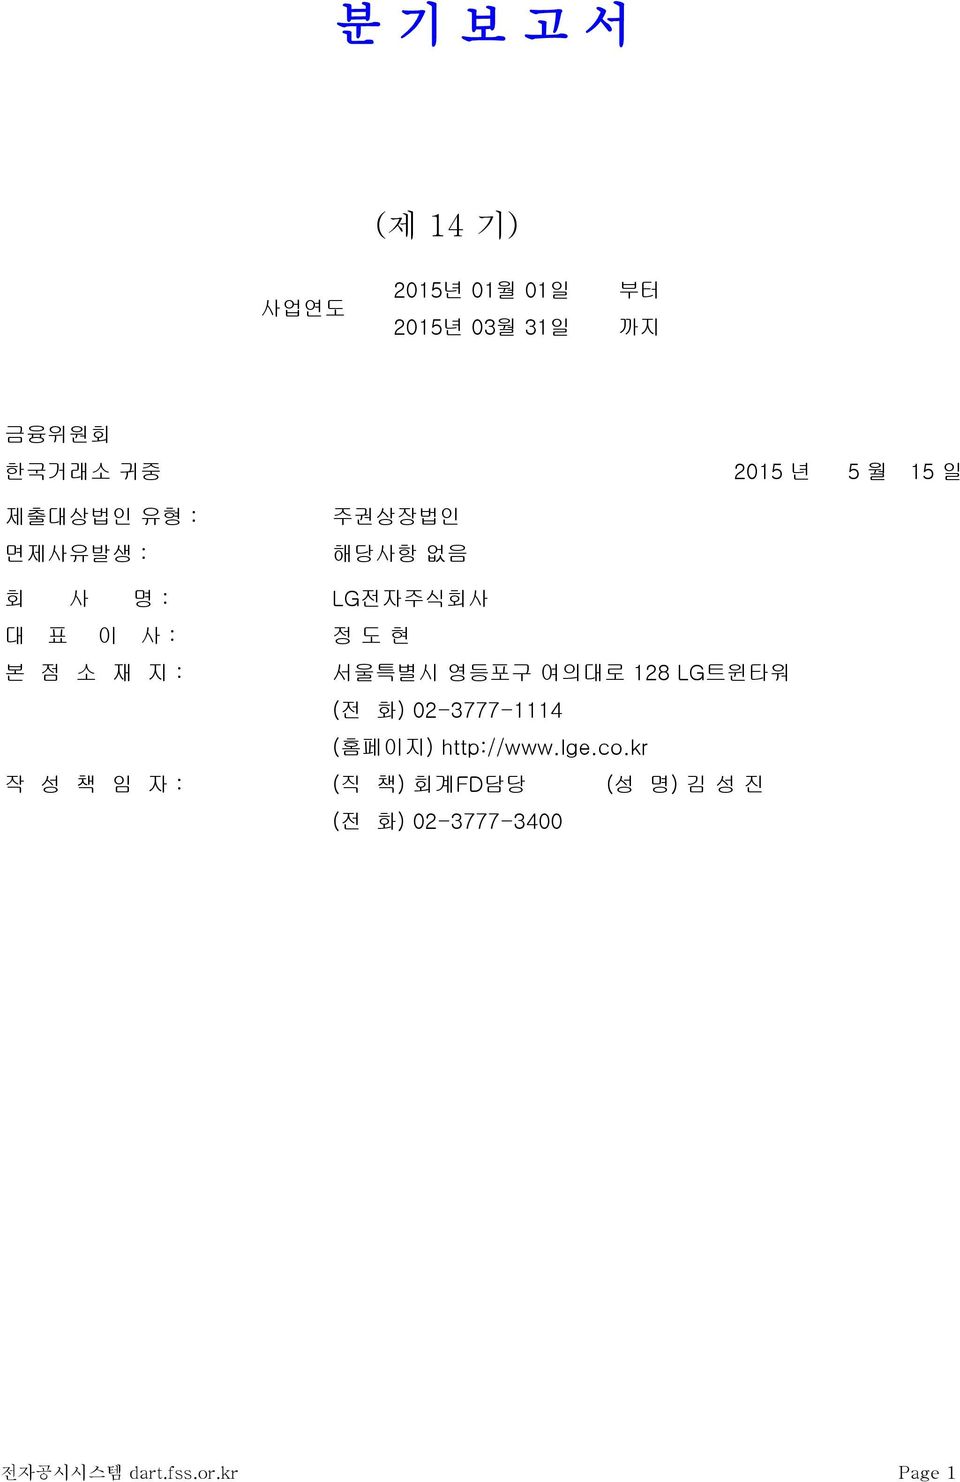 재 지 : 서울특별시 영등포구 여의대로 128 LG트윈타워 (전 화) 02-3777-1114 (홈페이지) http://www.lge.co.